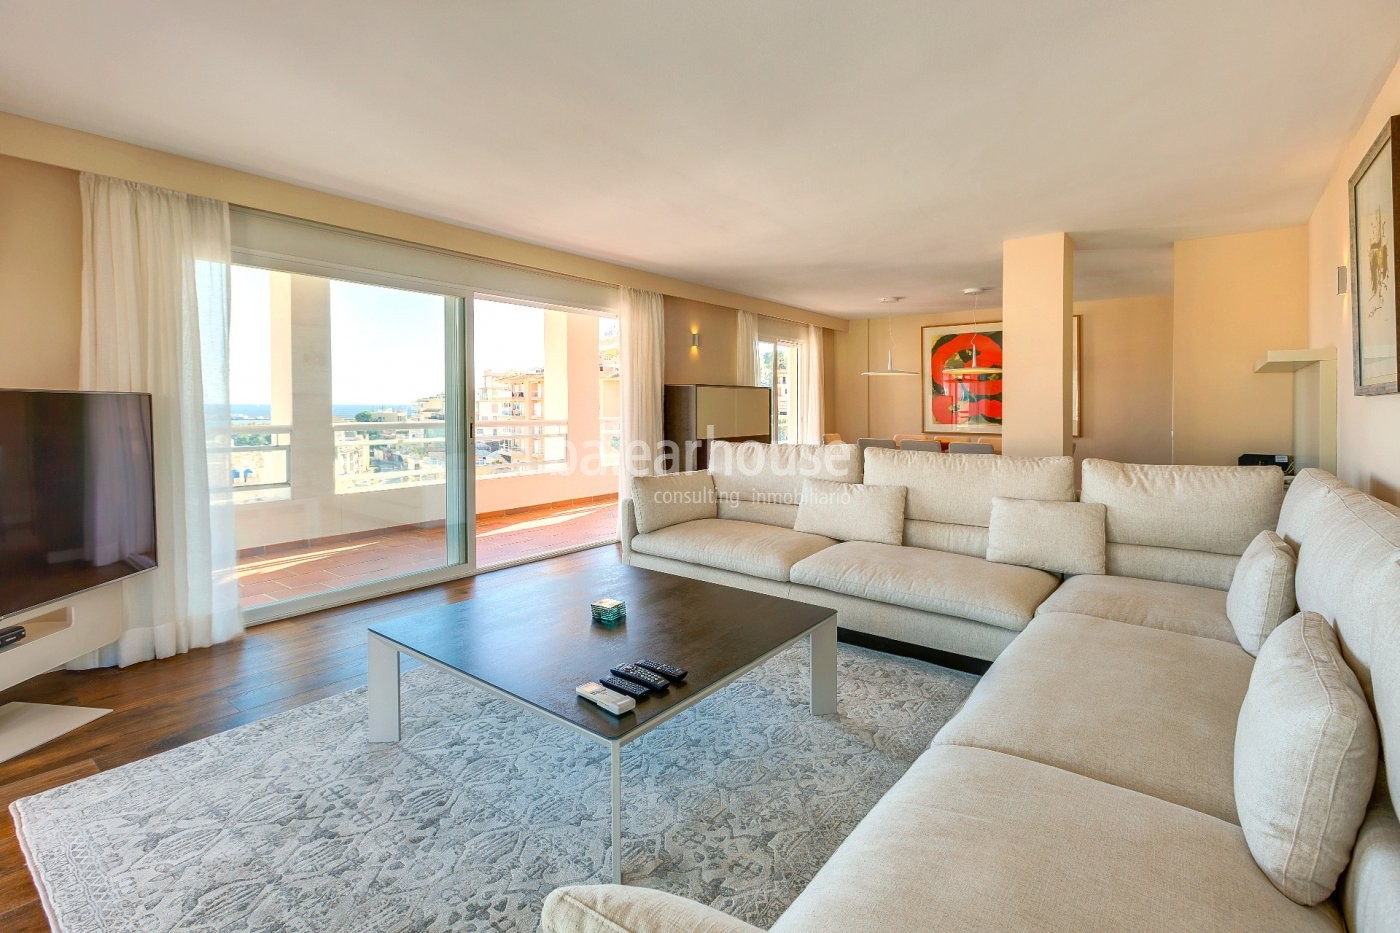 Spacious apartment with sea views in El Terreno